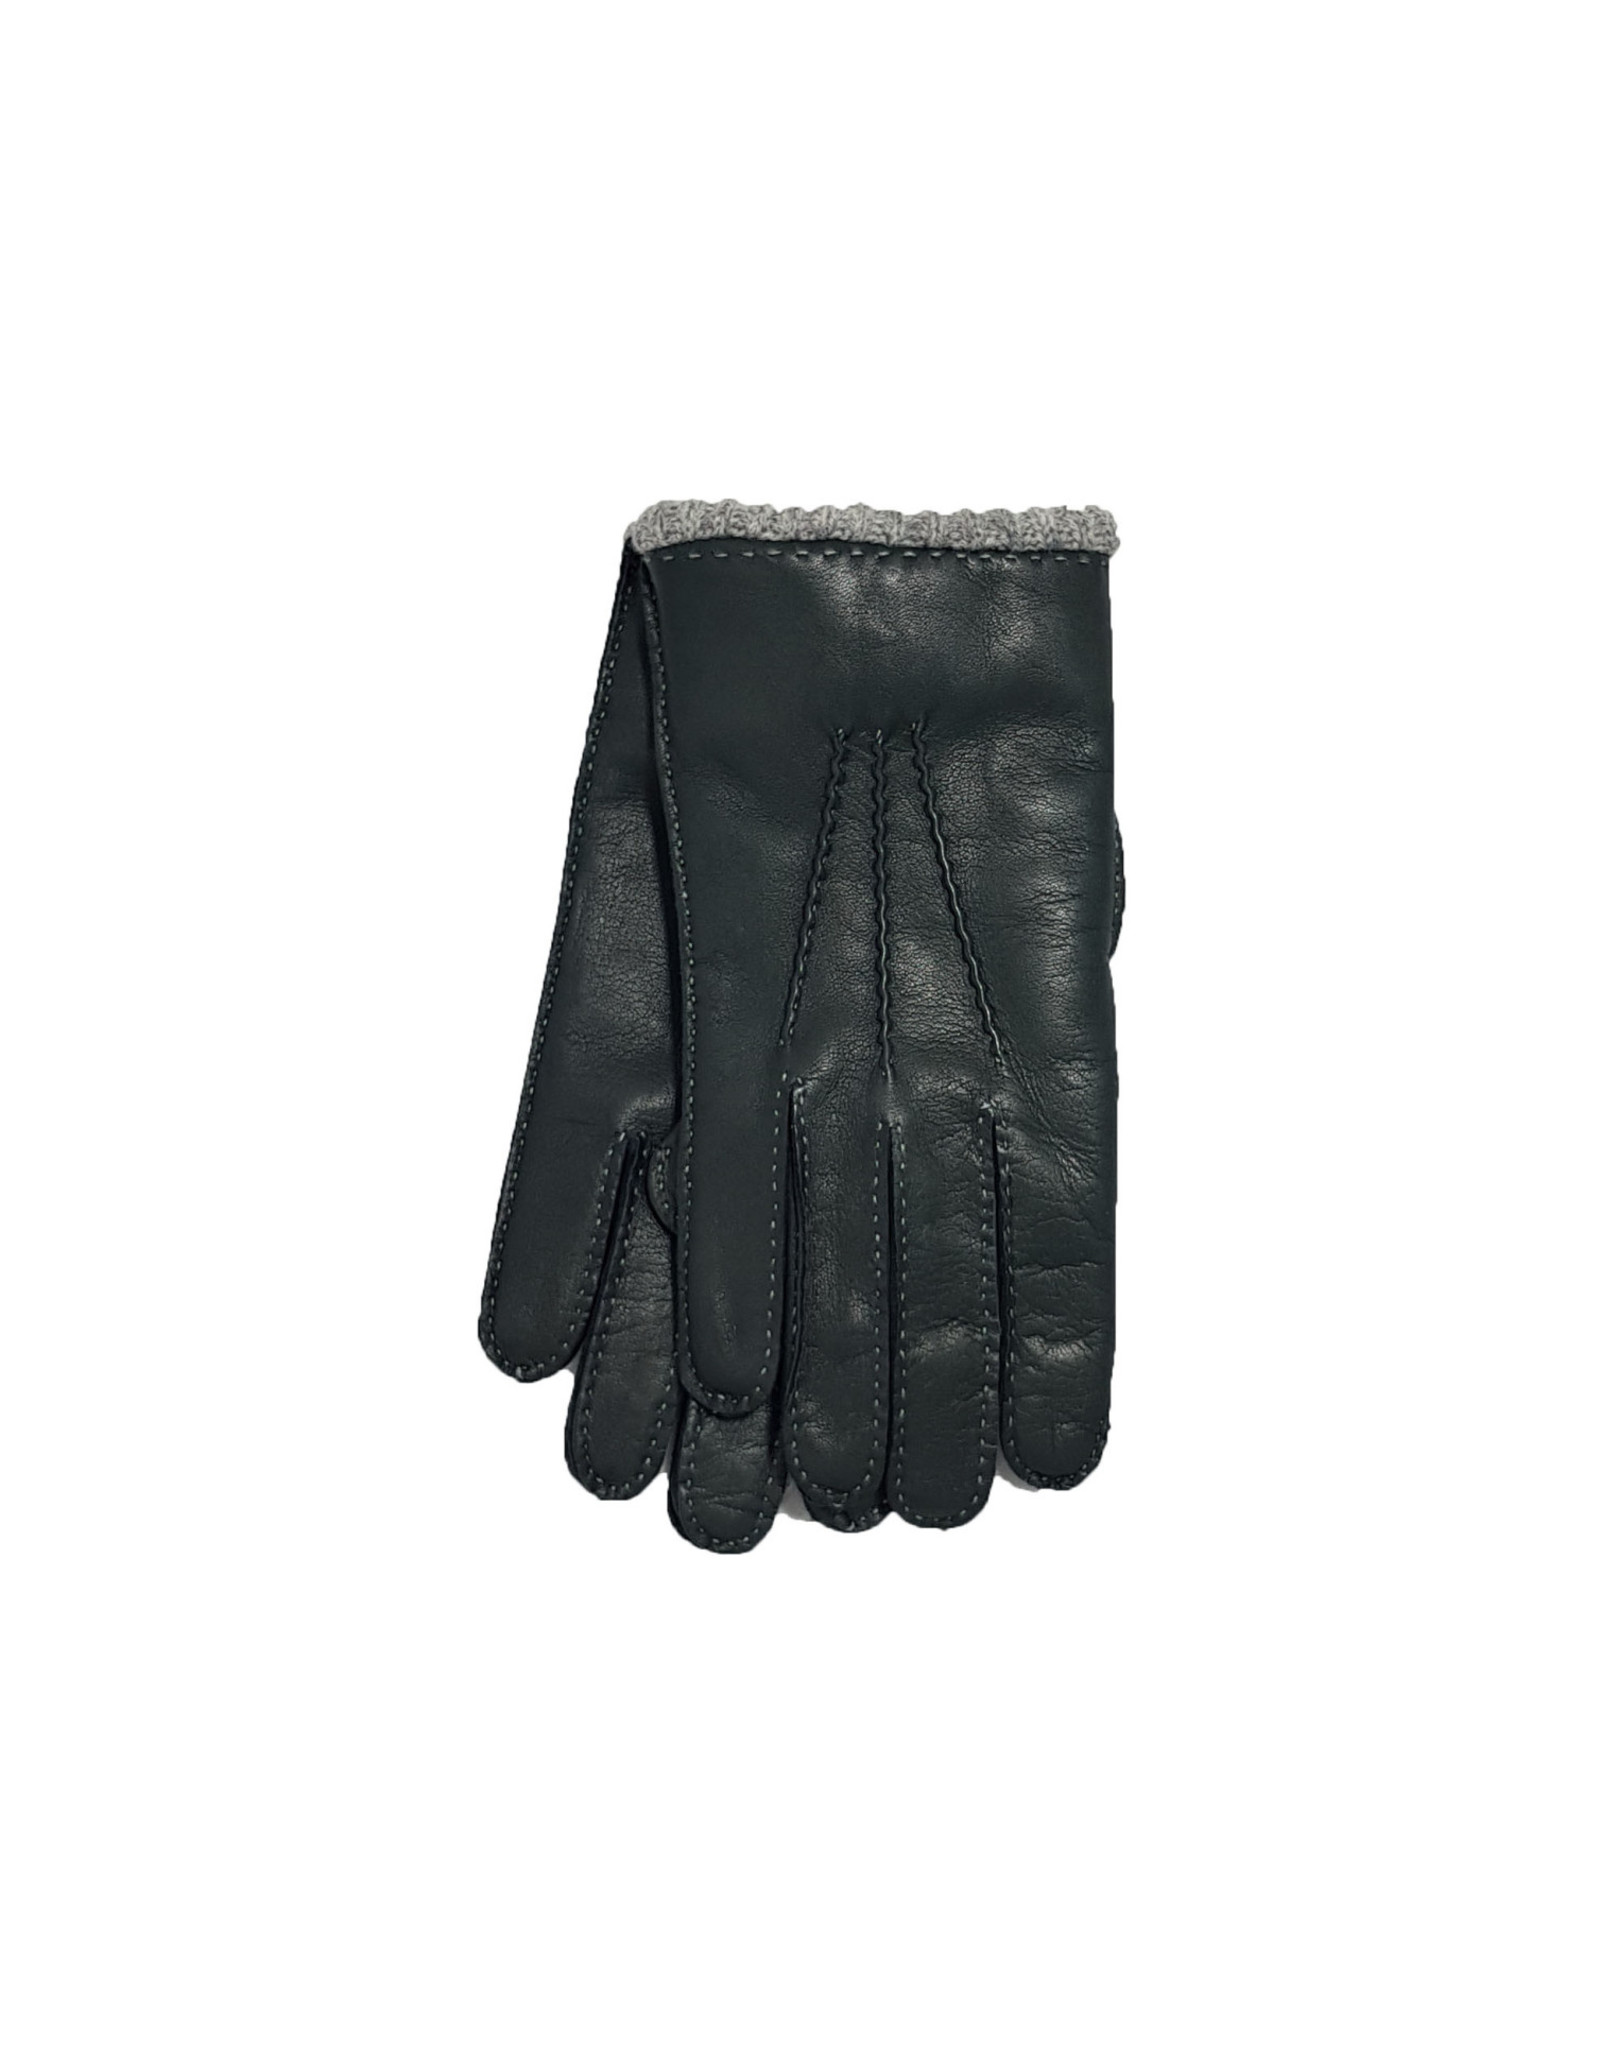 Mazzoleni Mazzoleni gloves leather green